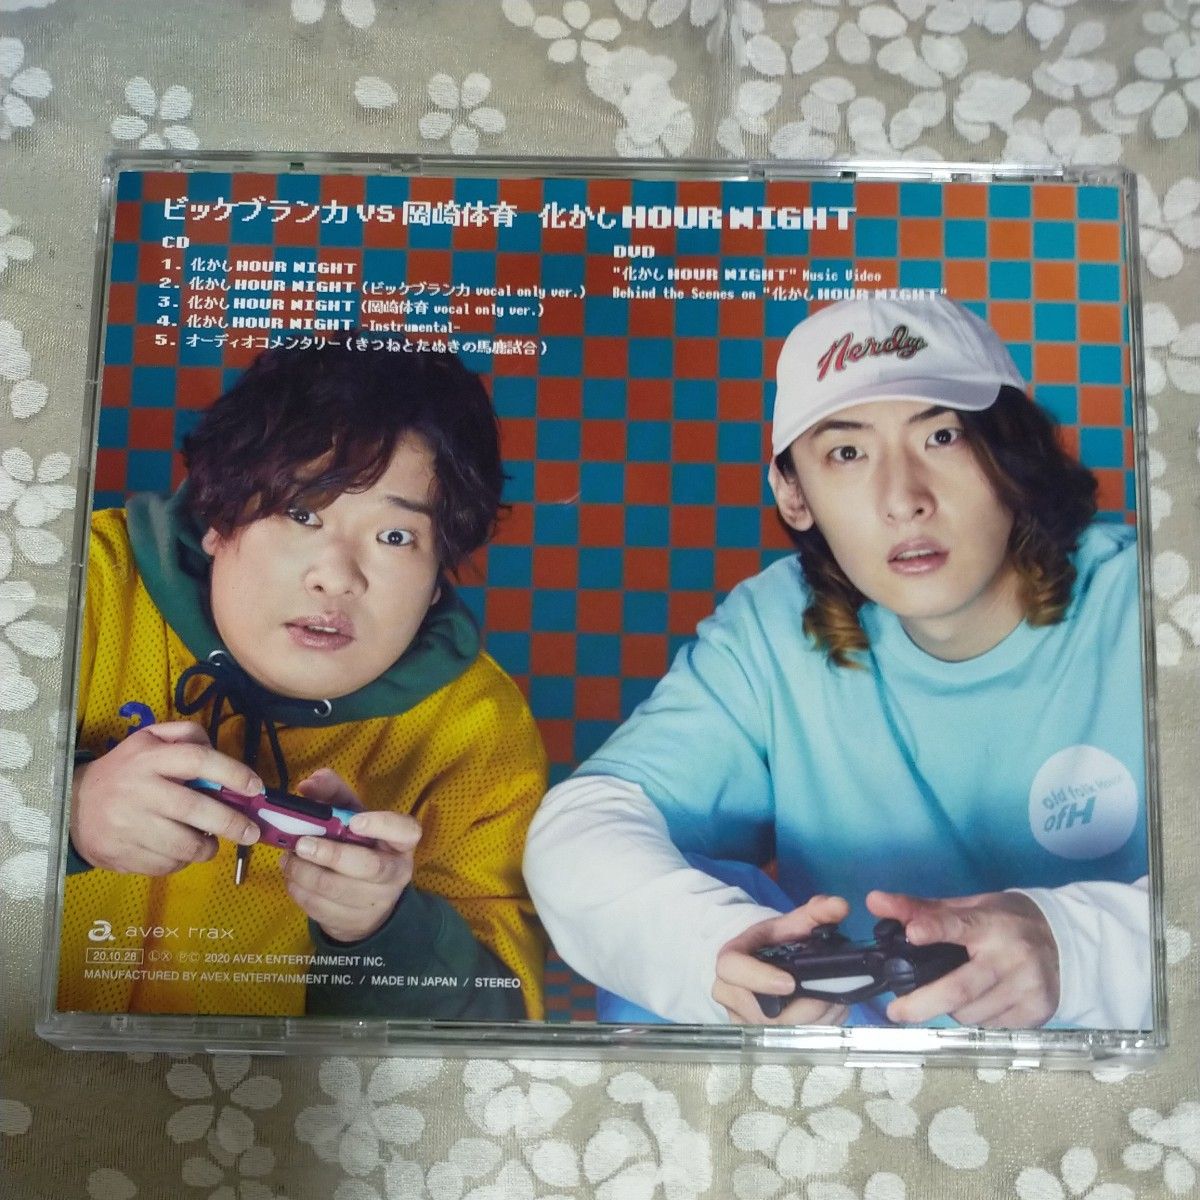  化かしHOUR NIGHT (CD+DVD) CD ビッケブランカ VS 岡崎体育